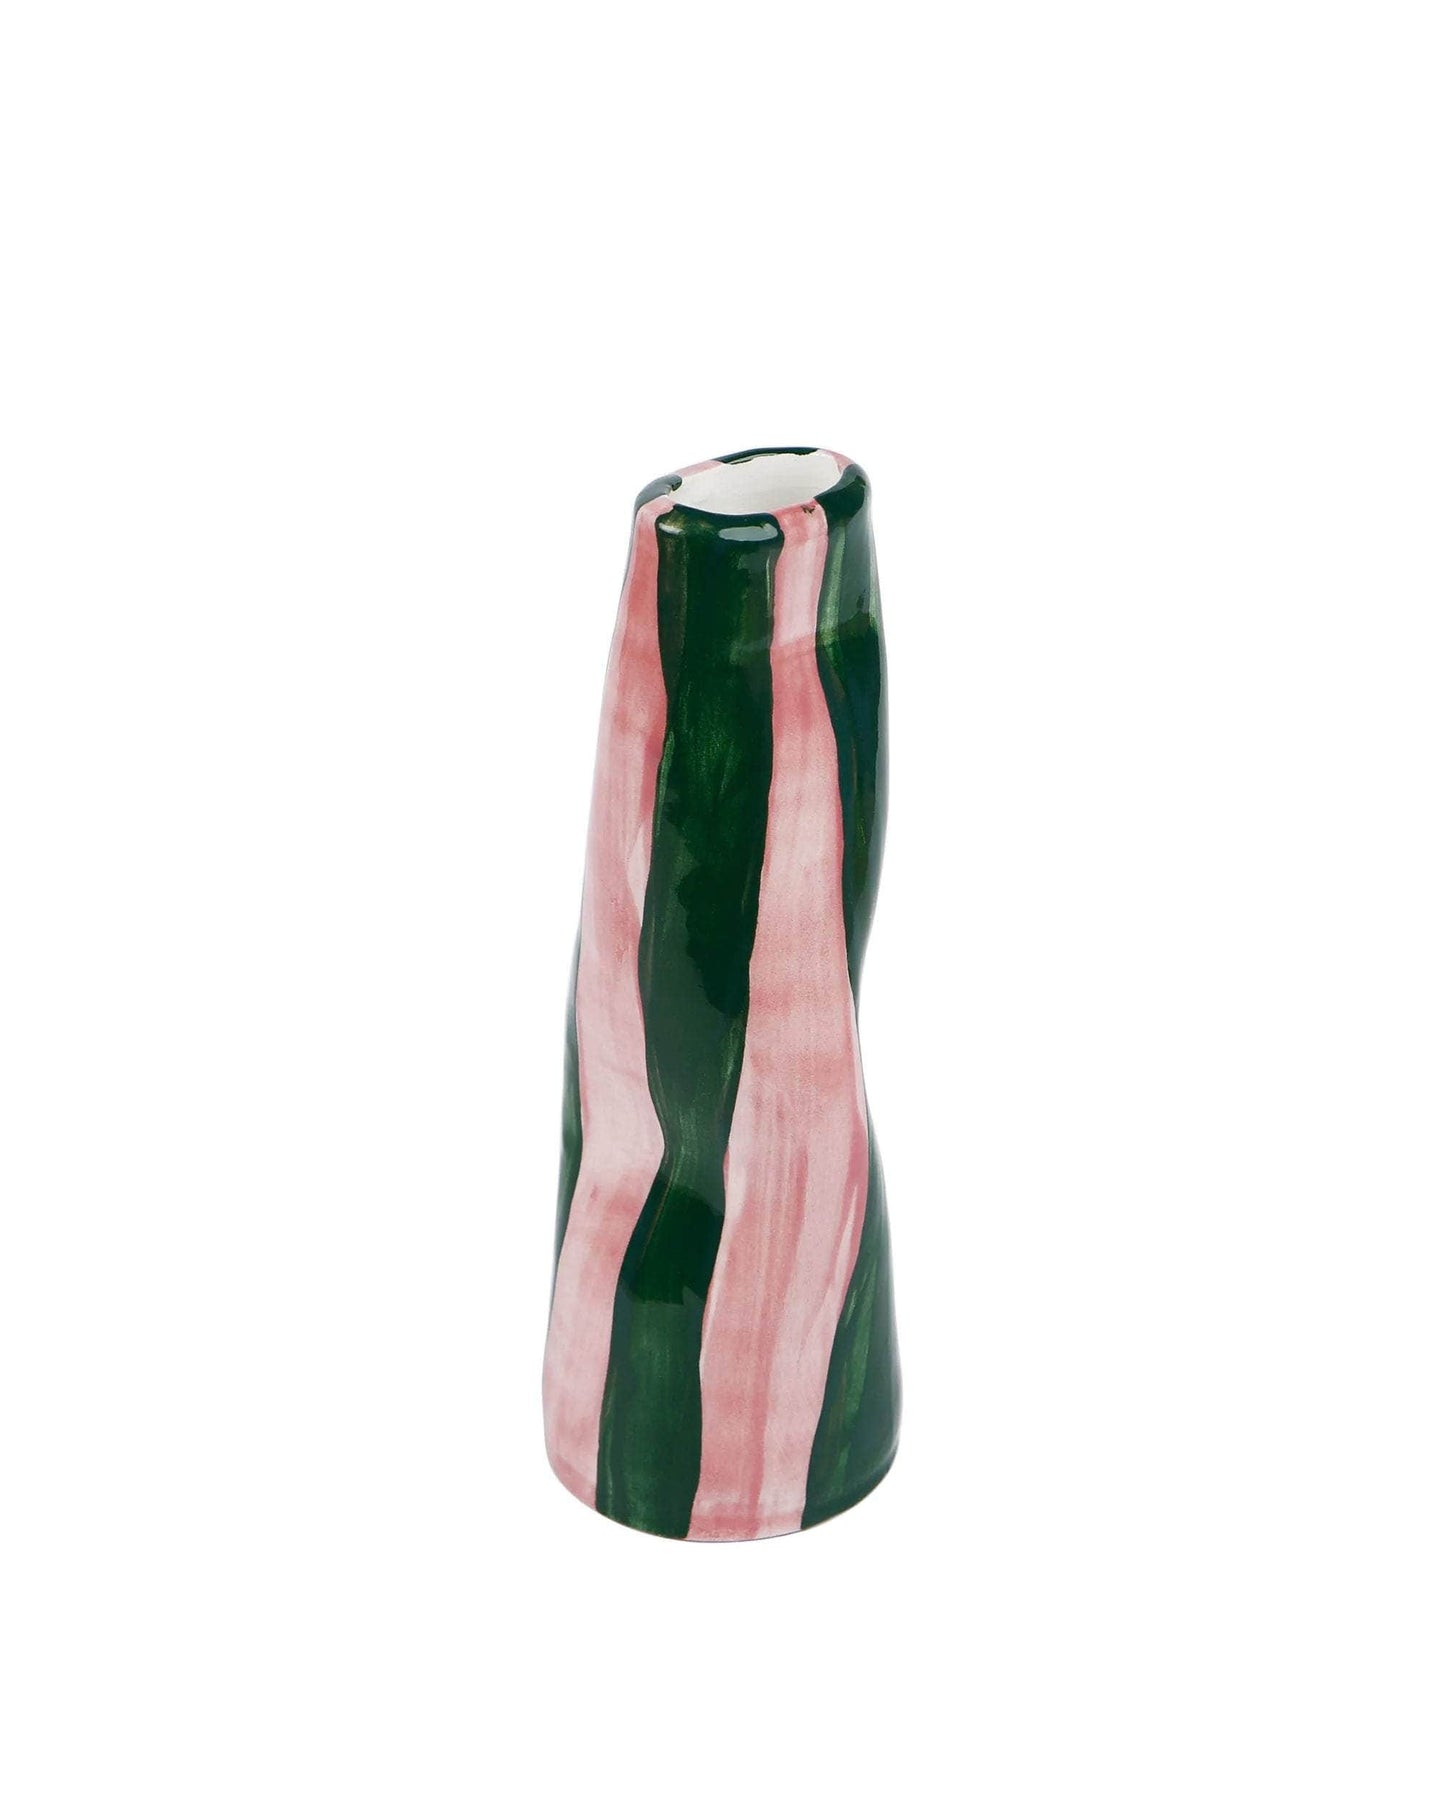 Green On Pink Stripes Vase